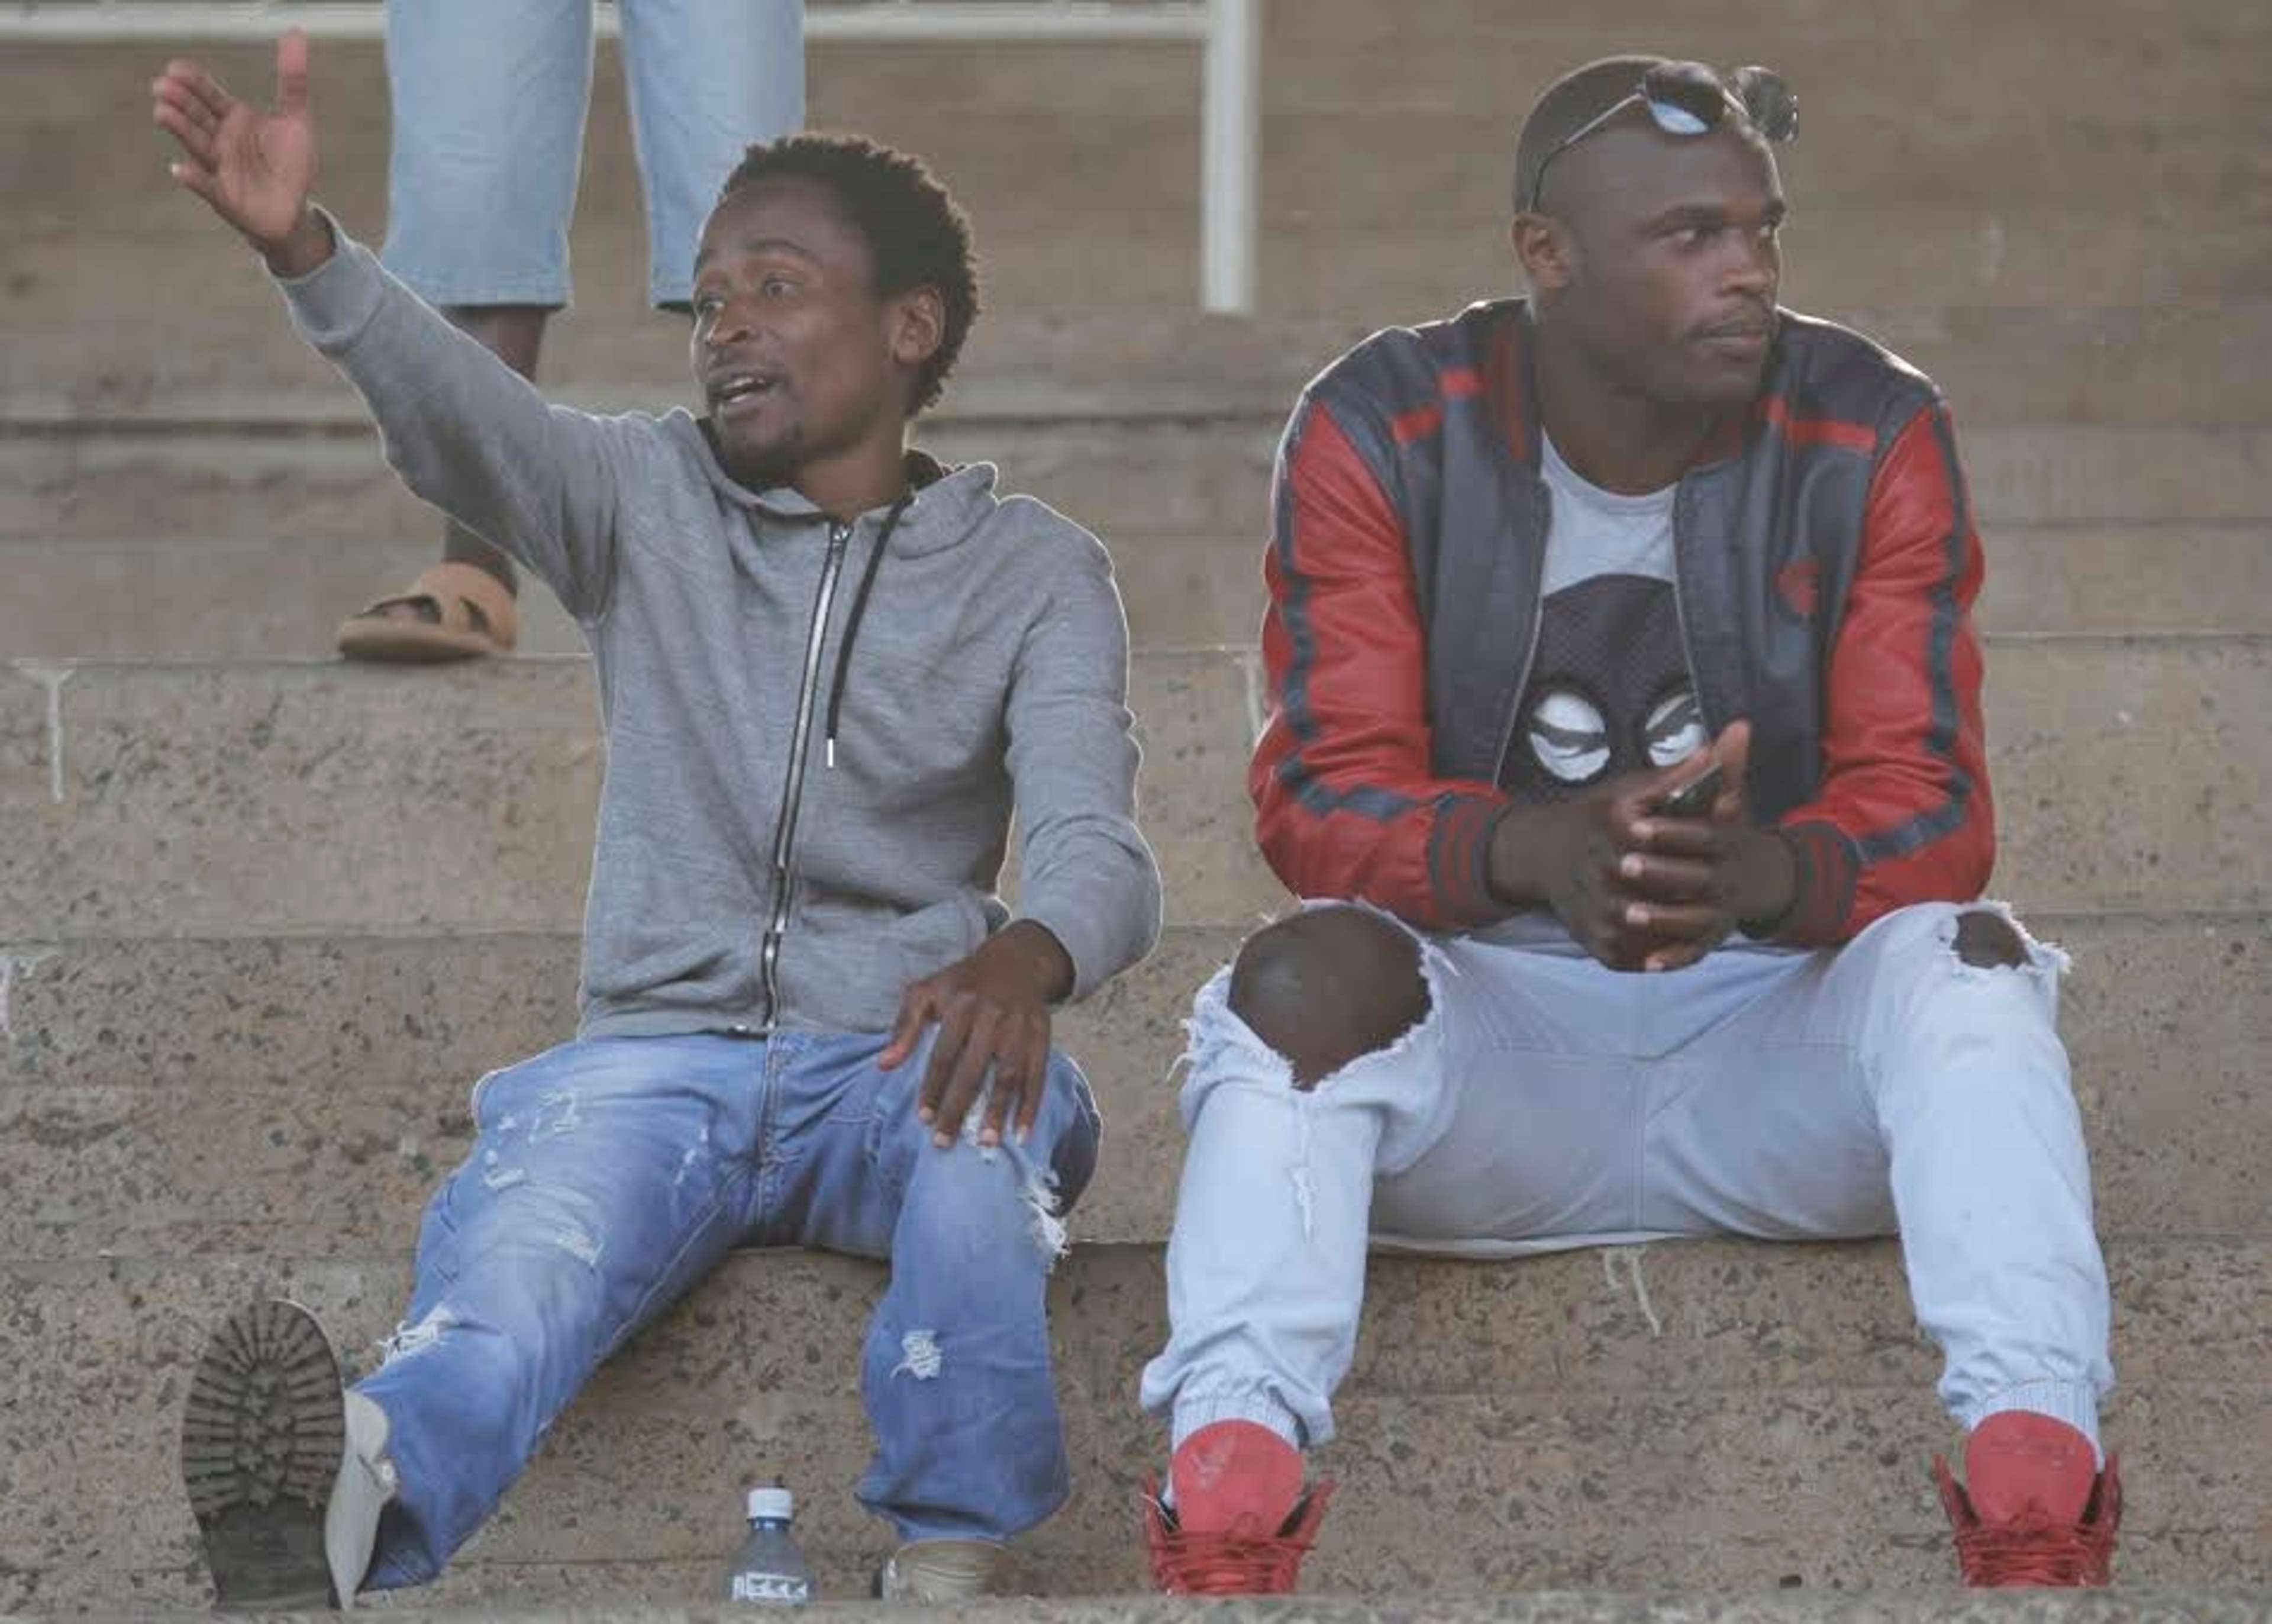 Kenya striker Dennis Oliech watching a local league match recently